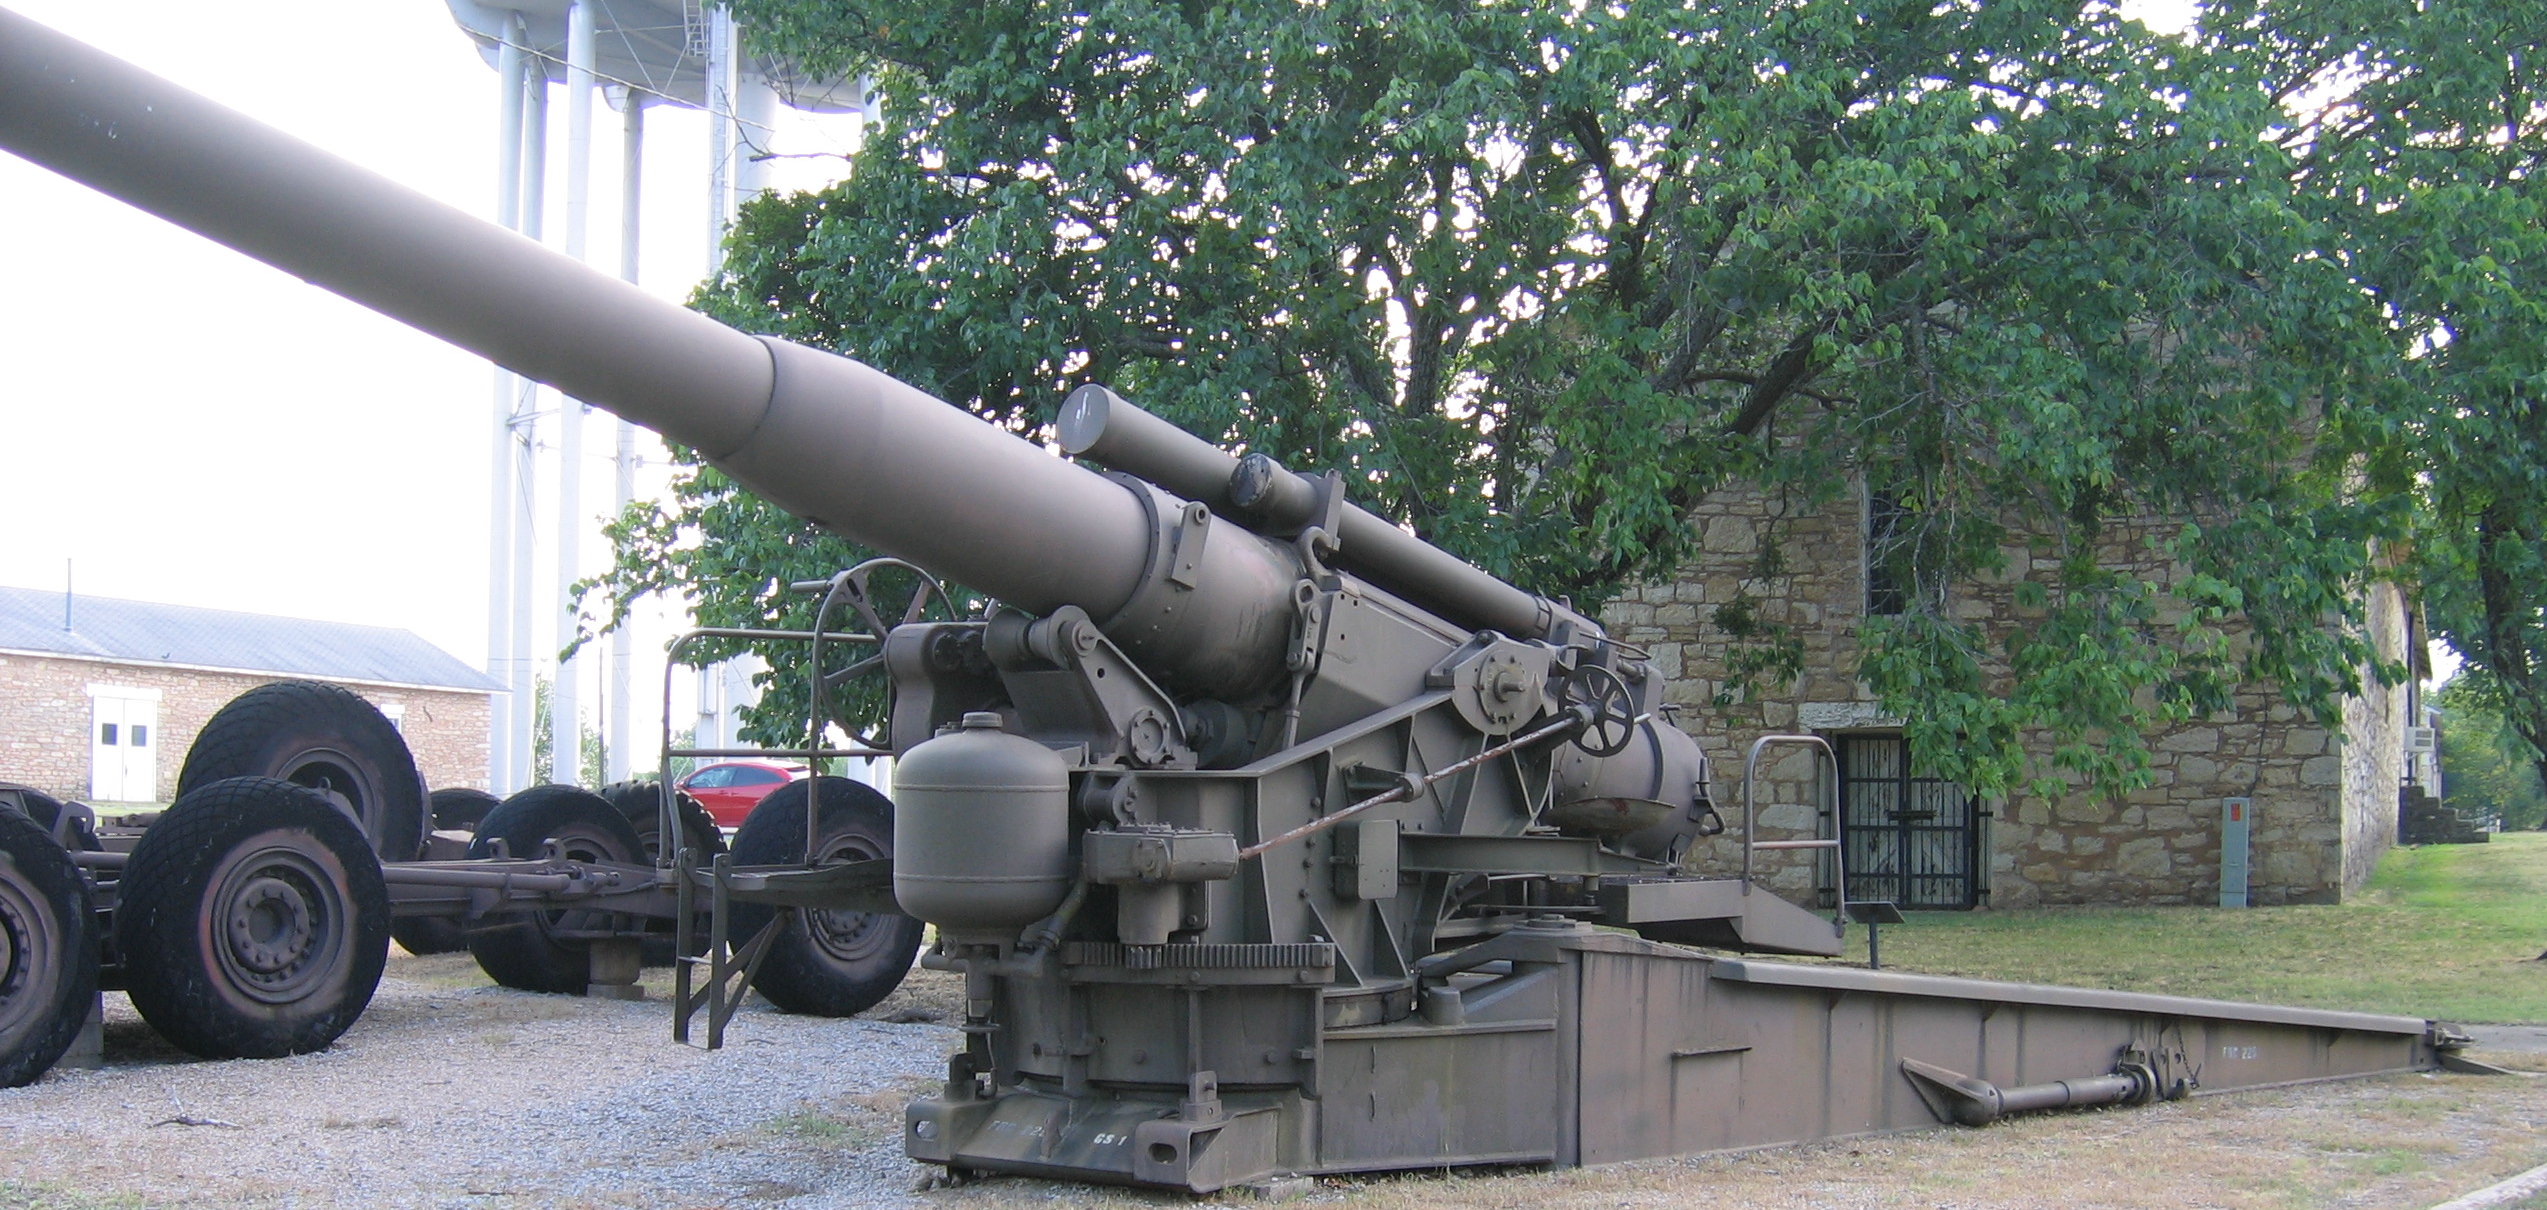 8 Inch Gun M1 Wikipedia - artillery cannon roblox